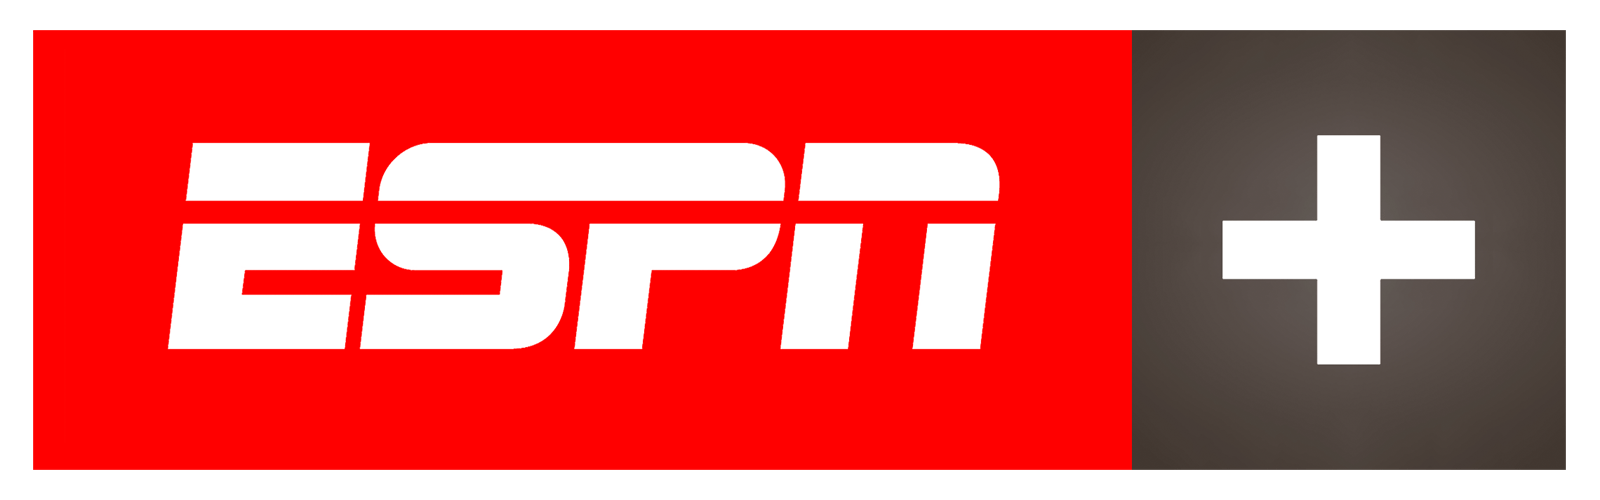 ESPN Logo - ESPN + BRASIL - LYNGSAT LOGO